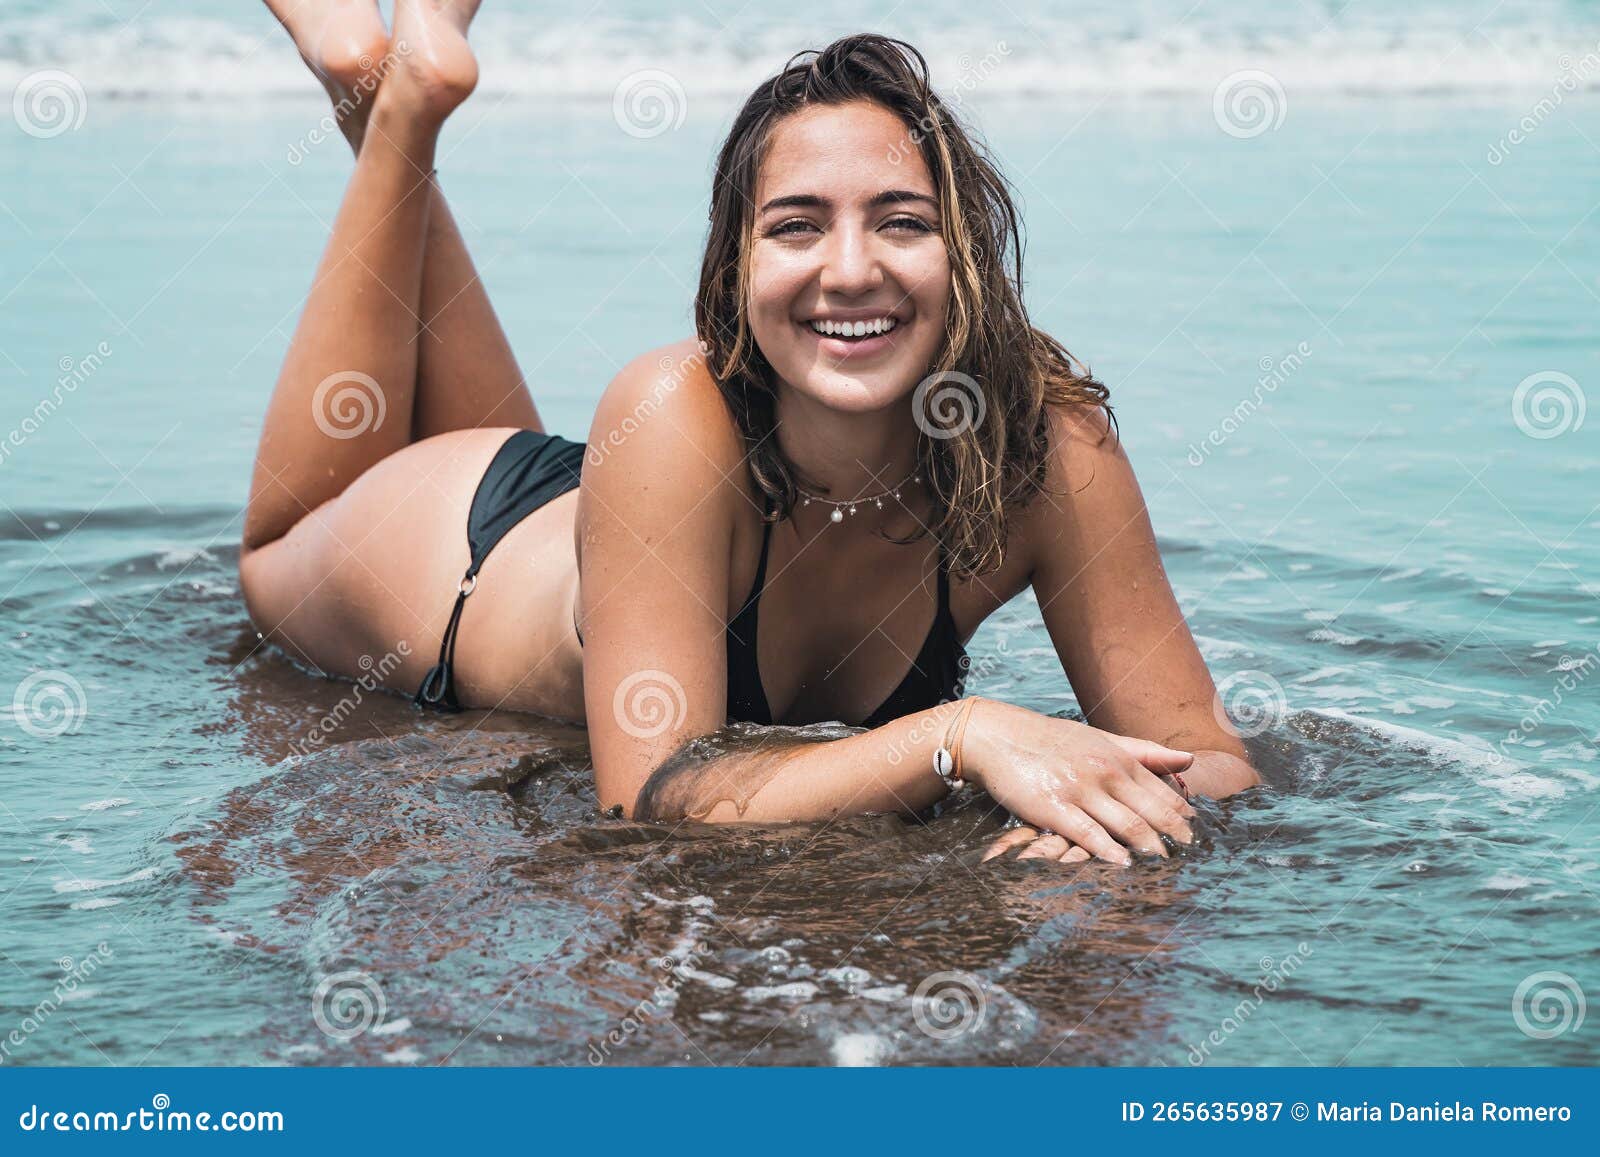 ashley maue add latina bathing suit photo